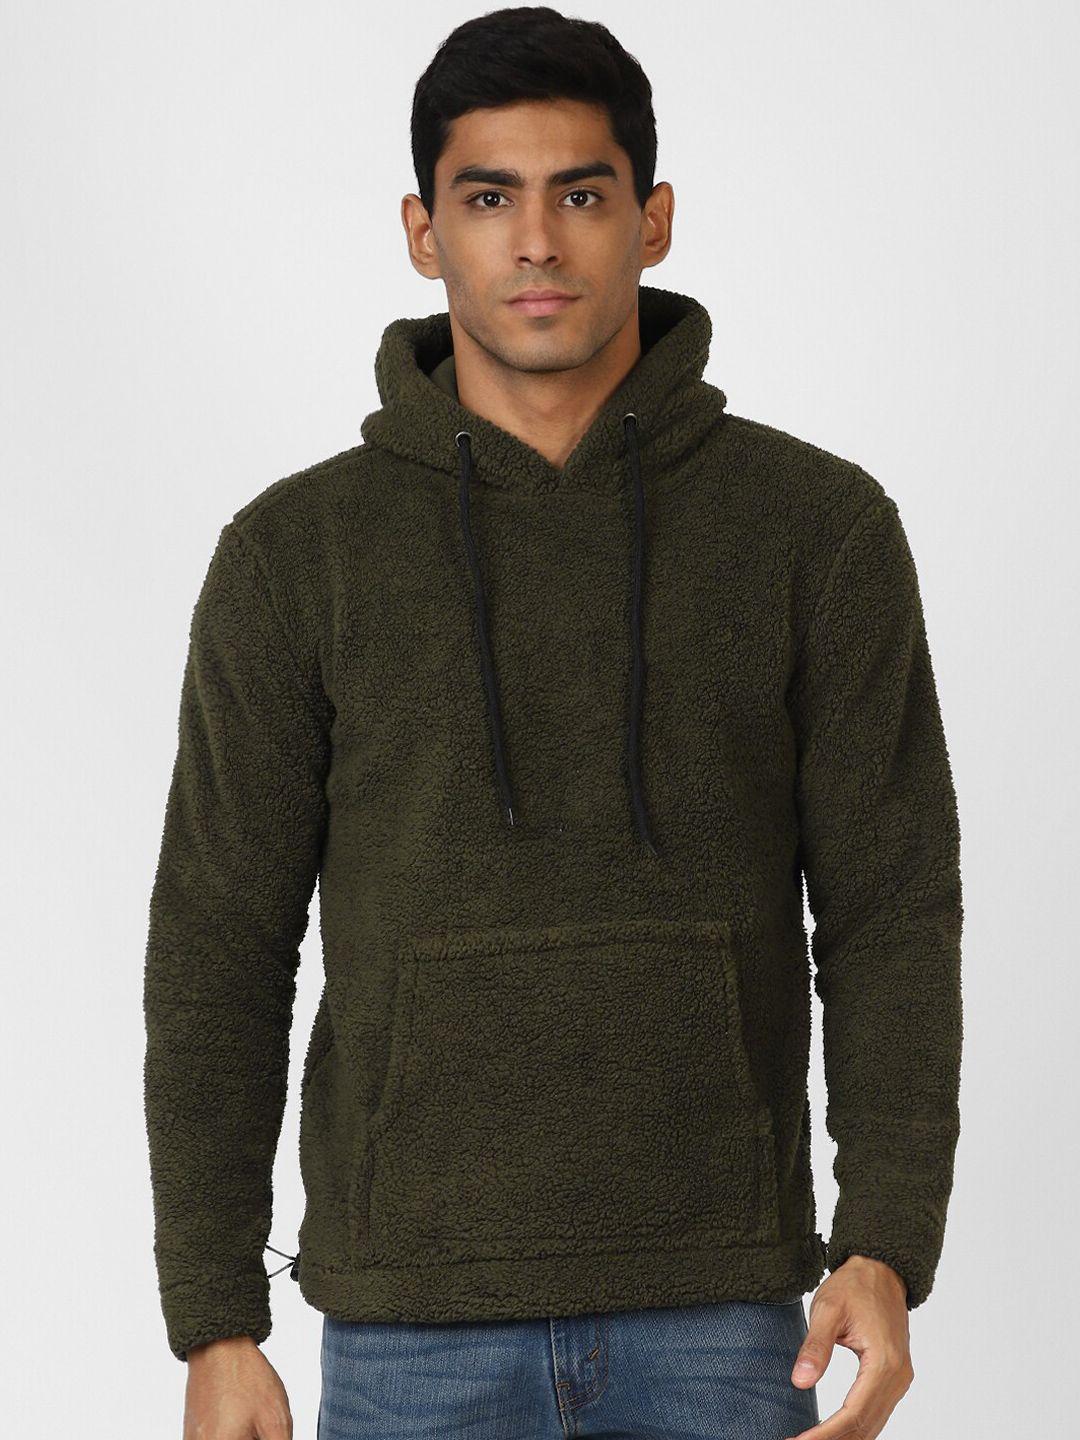 urbanmark long sleeve hooded sweatshirt